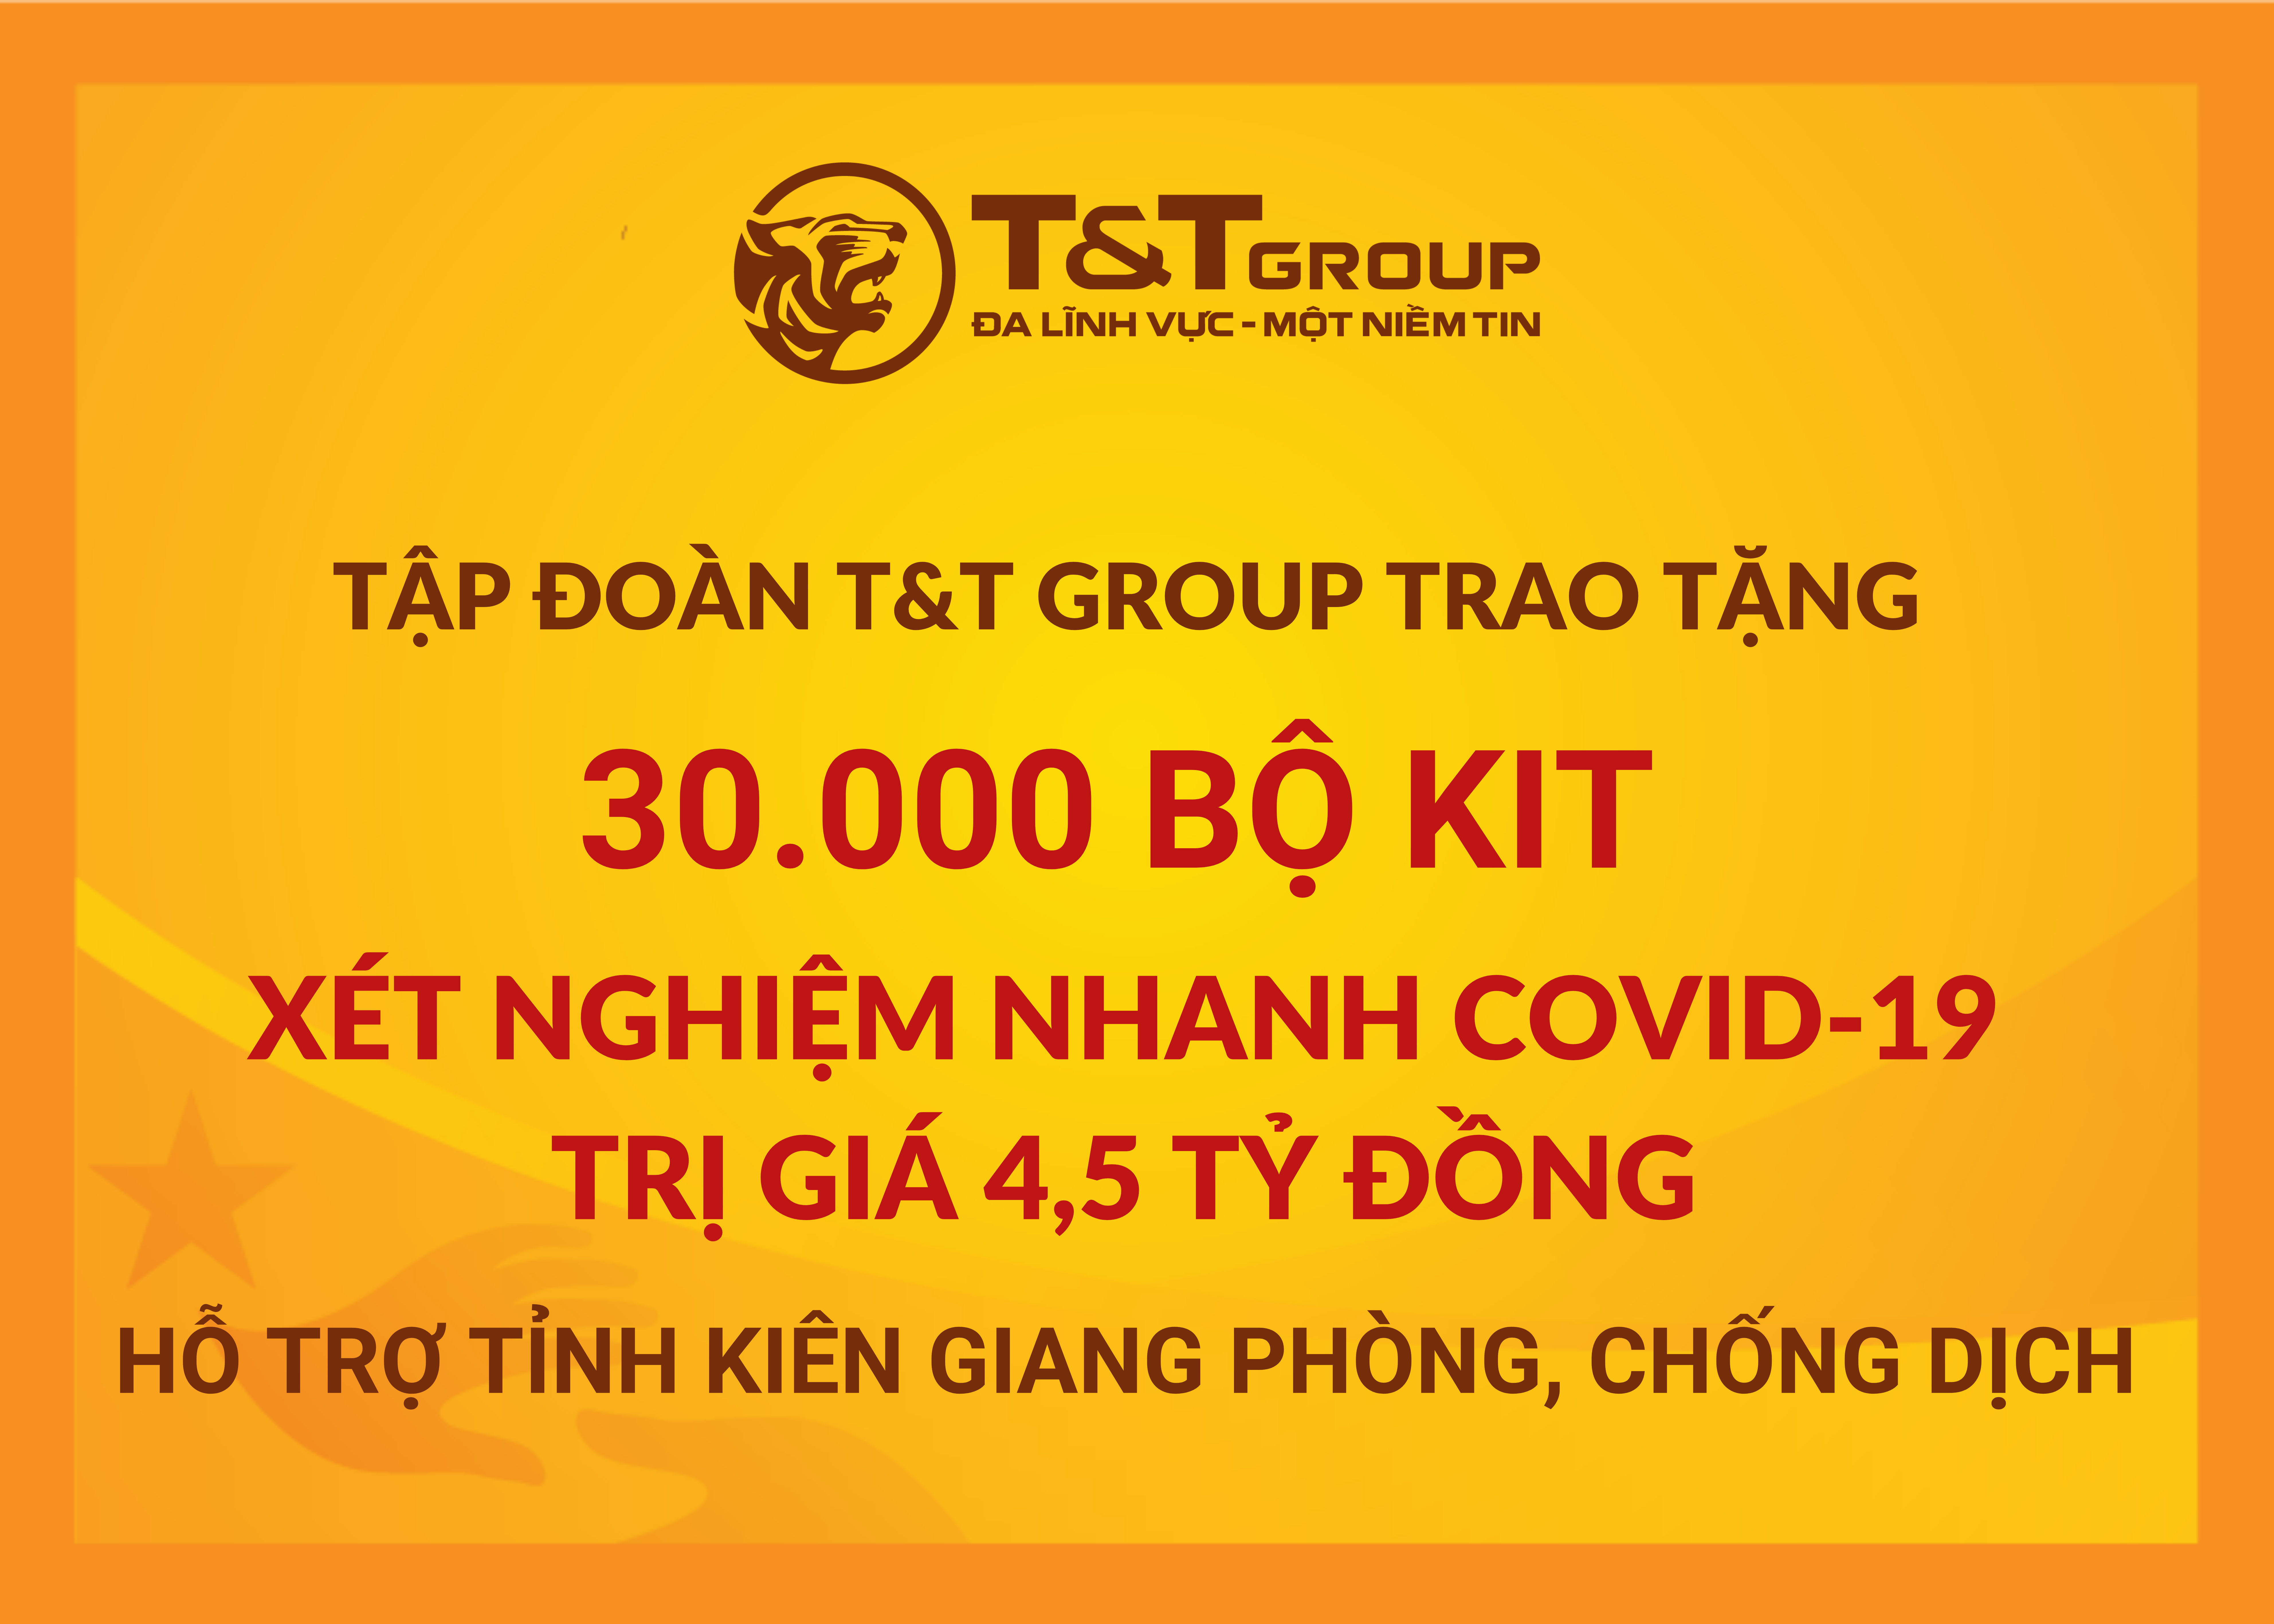 T&T Group “tiếp sức” tỉnh Kiên Giang 30.000 bộ kit xét nghiệm nhanh COVID-19 với tổng trị giá 4,5 tỉ đồng nhằm hỗ trợ địa phương trong công tác phòng, chống dịch. Ảnh: T&T